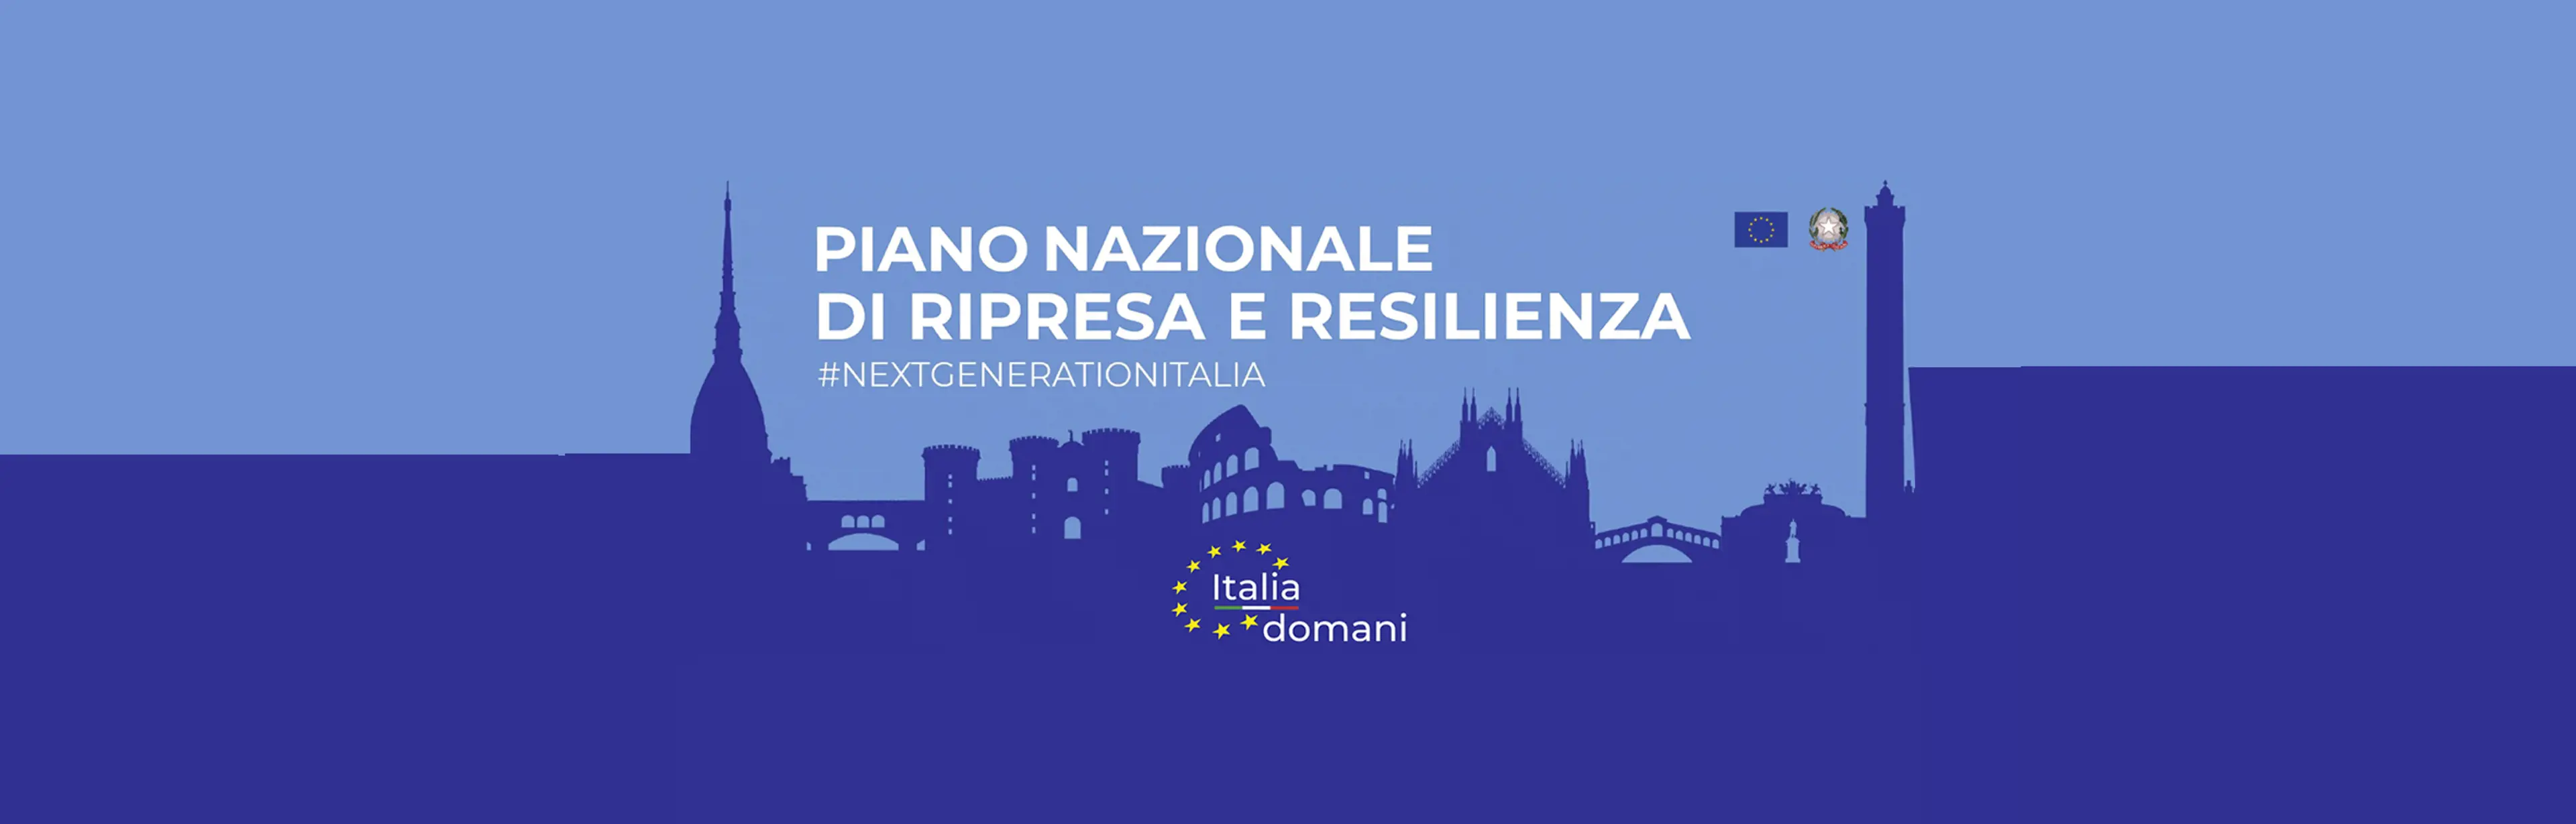 Piano nazionale di ripresa e resilienza #nextgenerationitalia, Italia domani, loghi Unione europea e Repubblica italiana